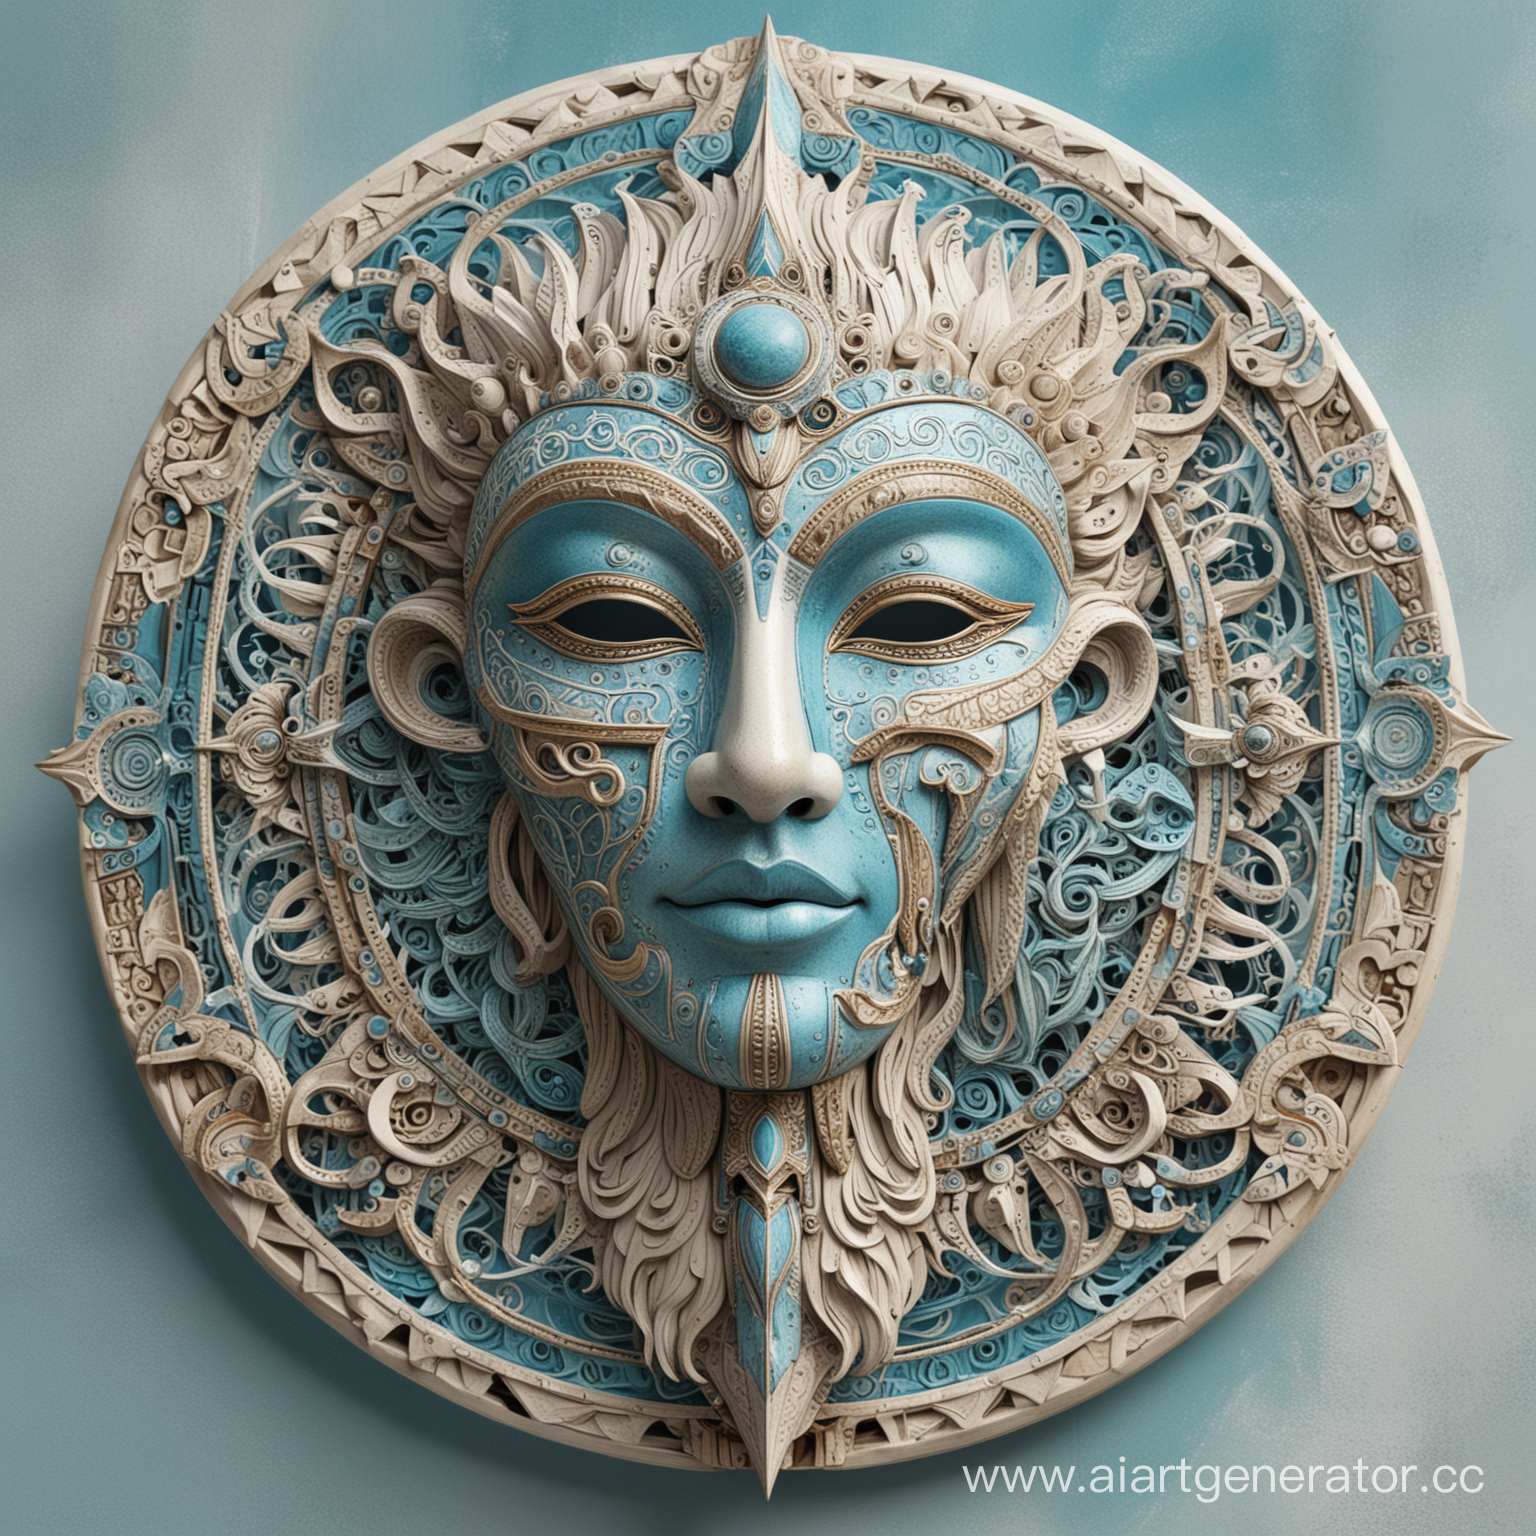 Интерьерная маска прекрасного небесного существа, символичная,  симметричная, в полный размер, сложно выполненная, со множеством деталей и фактур. Выполнена в синем, голубом, бирюзовом, белом, бежевом , серебряном цветах.